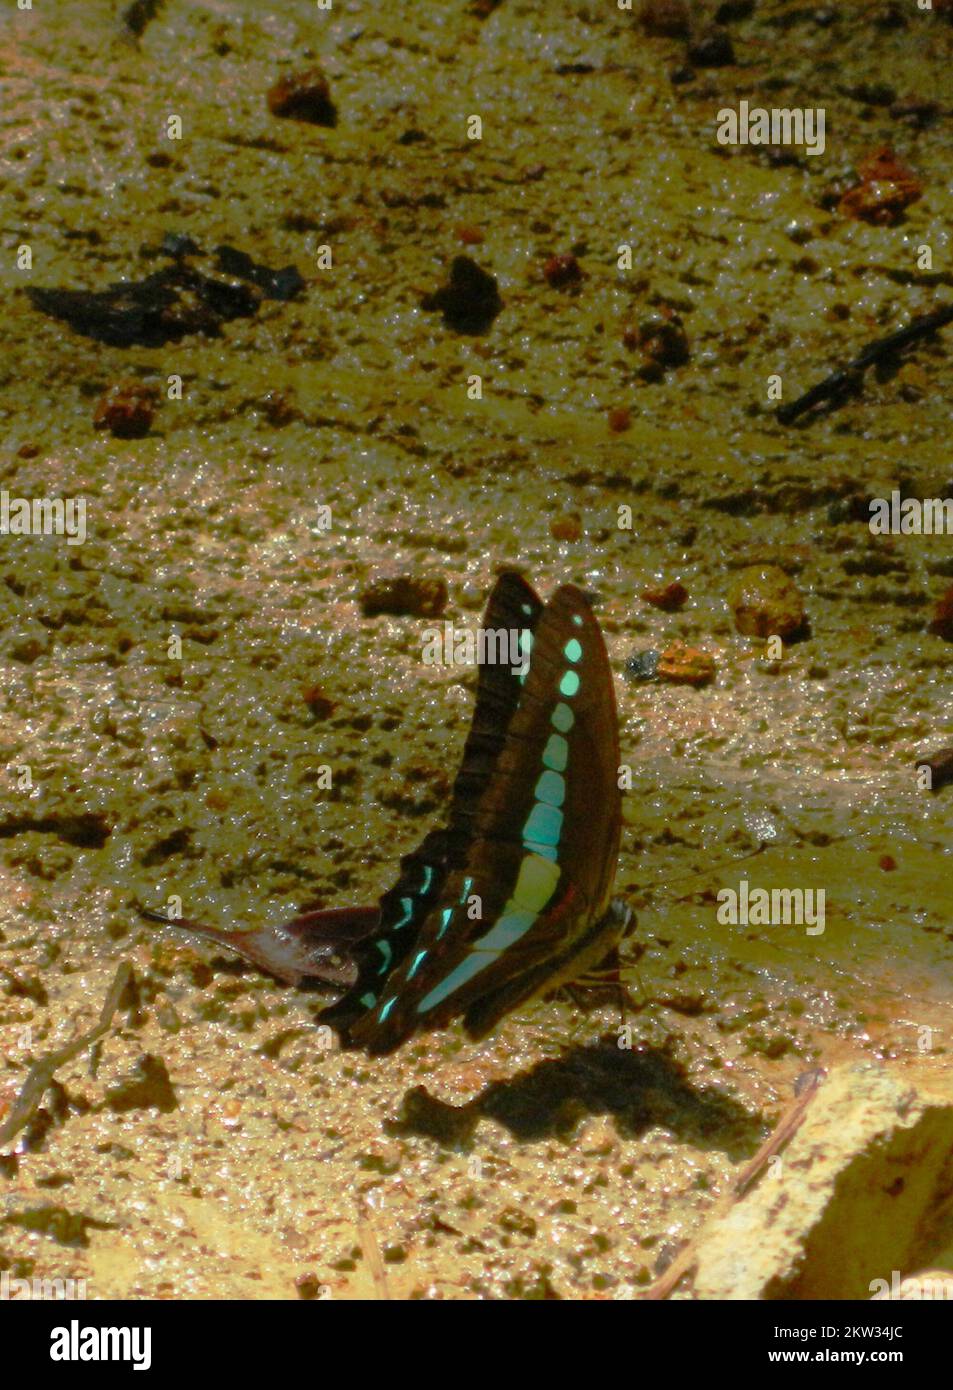 La bouteille bleue commune est un papillon qui peut être vu communément dans la forêt de Sinharaja. MUDr puddling et supukinging minéral des sols humides est un comportement commun de ce papillon. Un magnifique papillon bleu brillant. Sinharaja, Sri Lanka. Banque D'Images